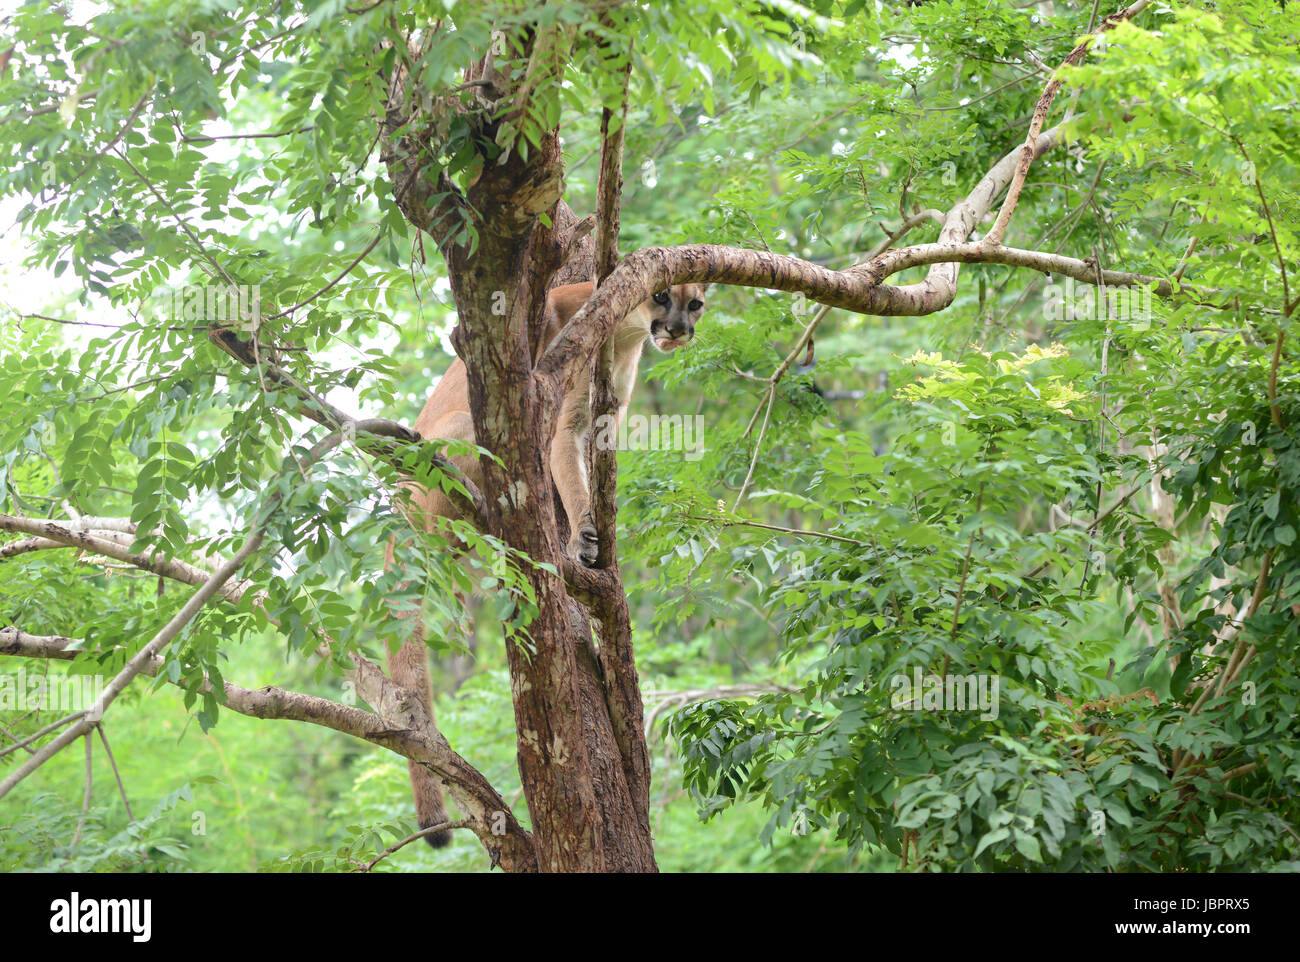 Puma grimpant sur arbre et manger de la viande Photo Stock - Alamy